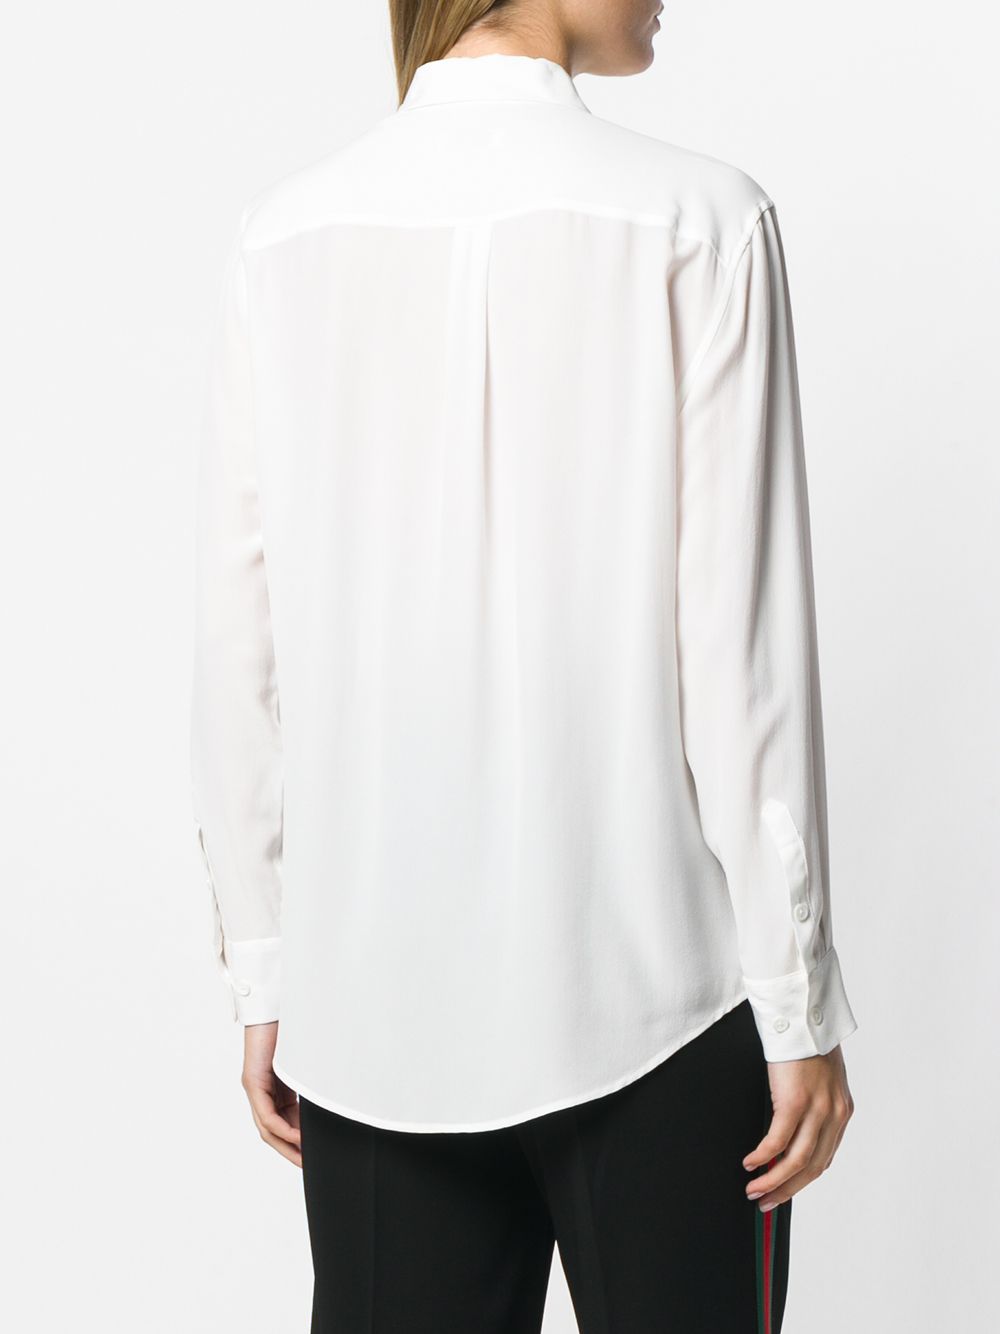 Equipement - blouse signature - blanc